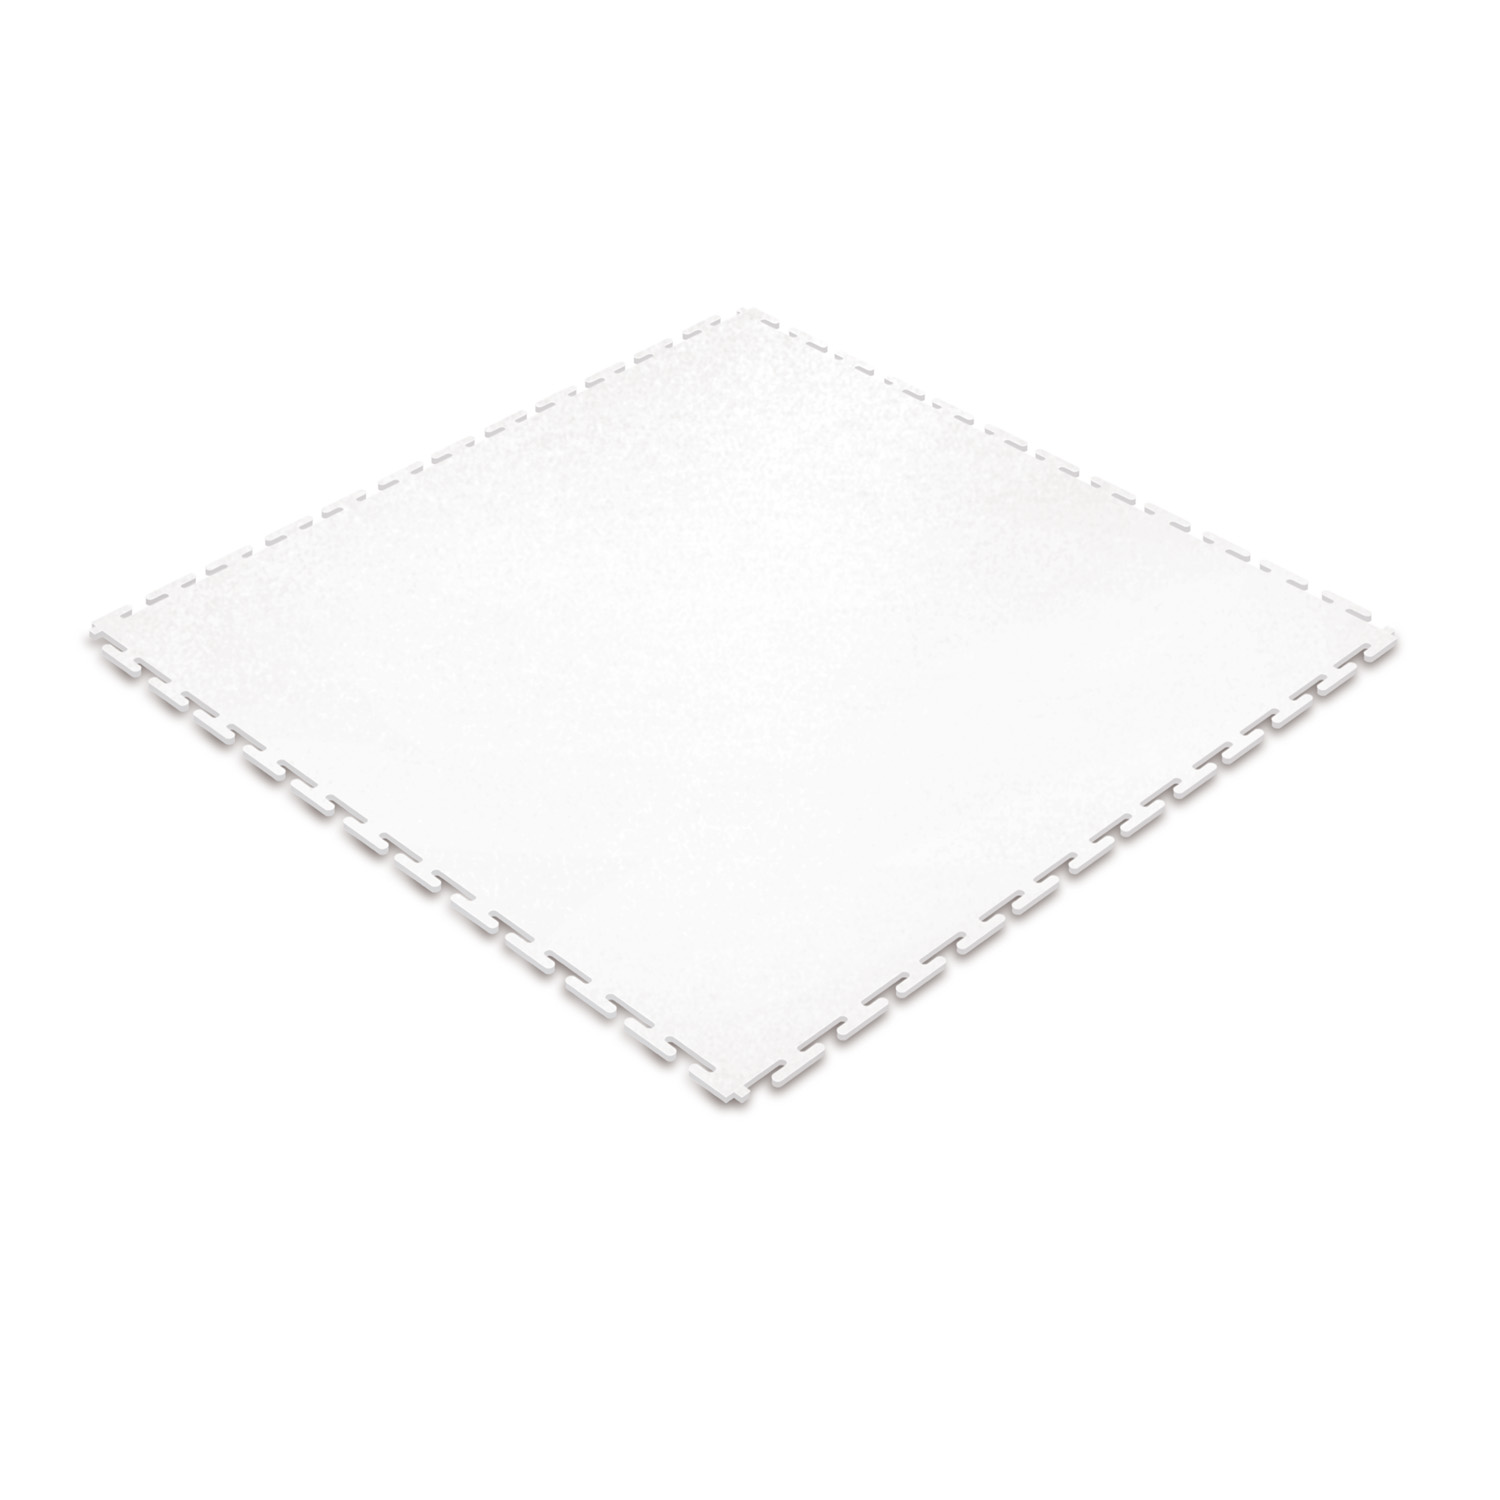 Standard floor tile (white/textured)